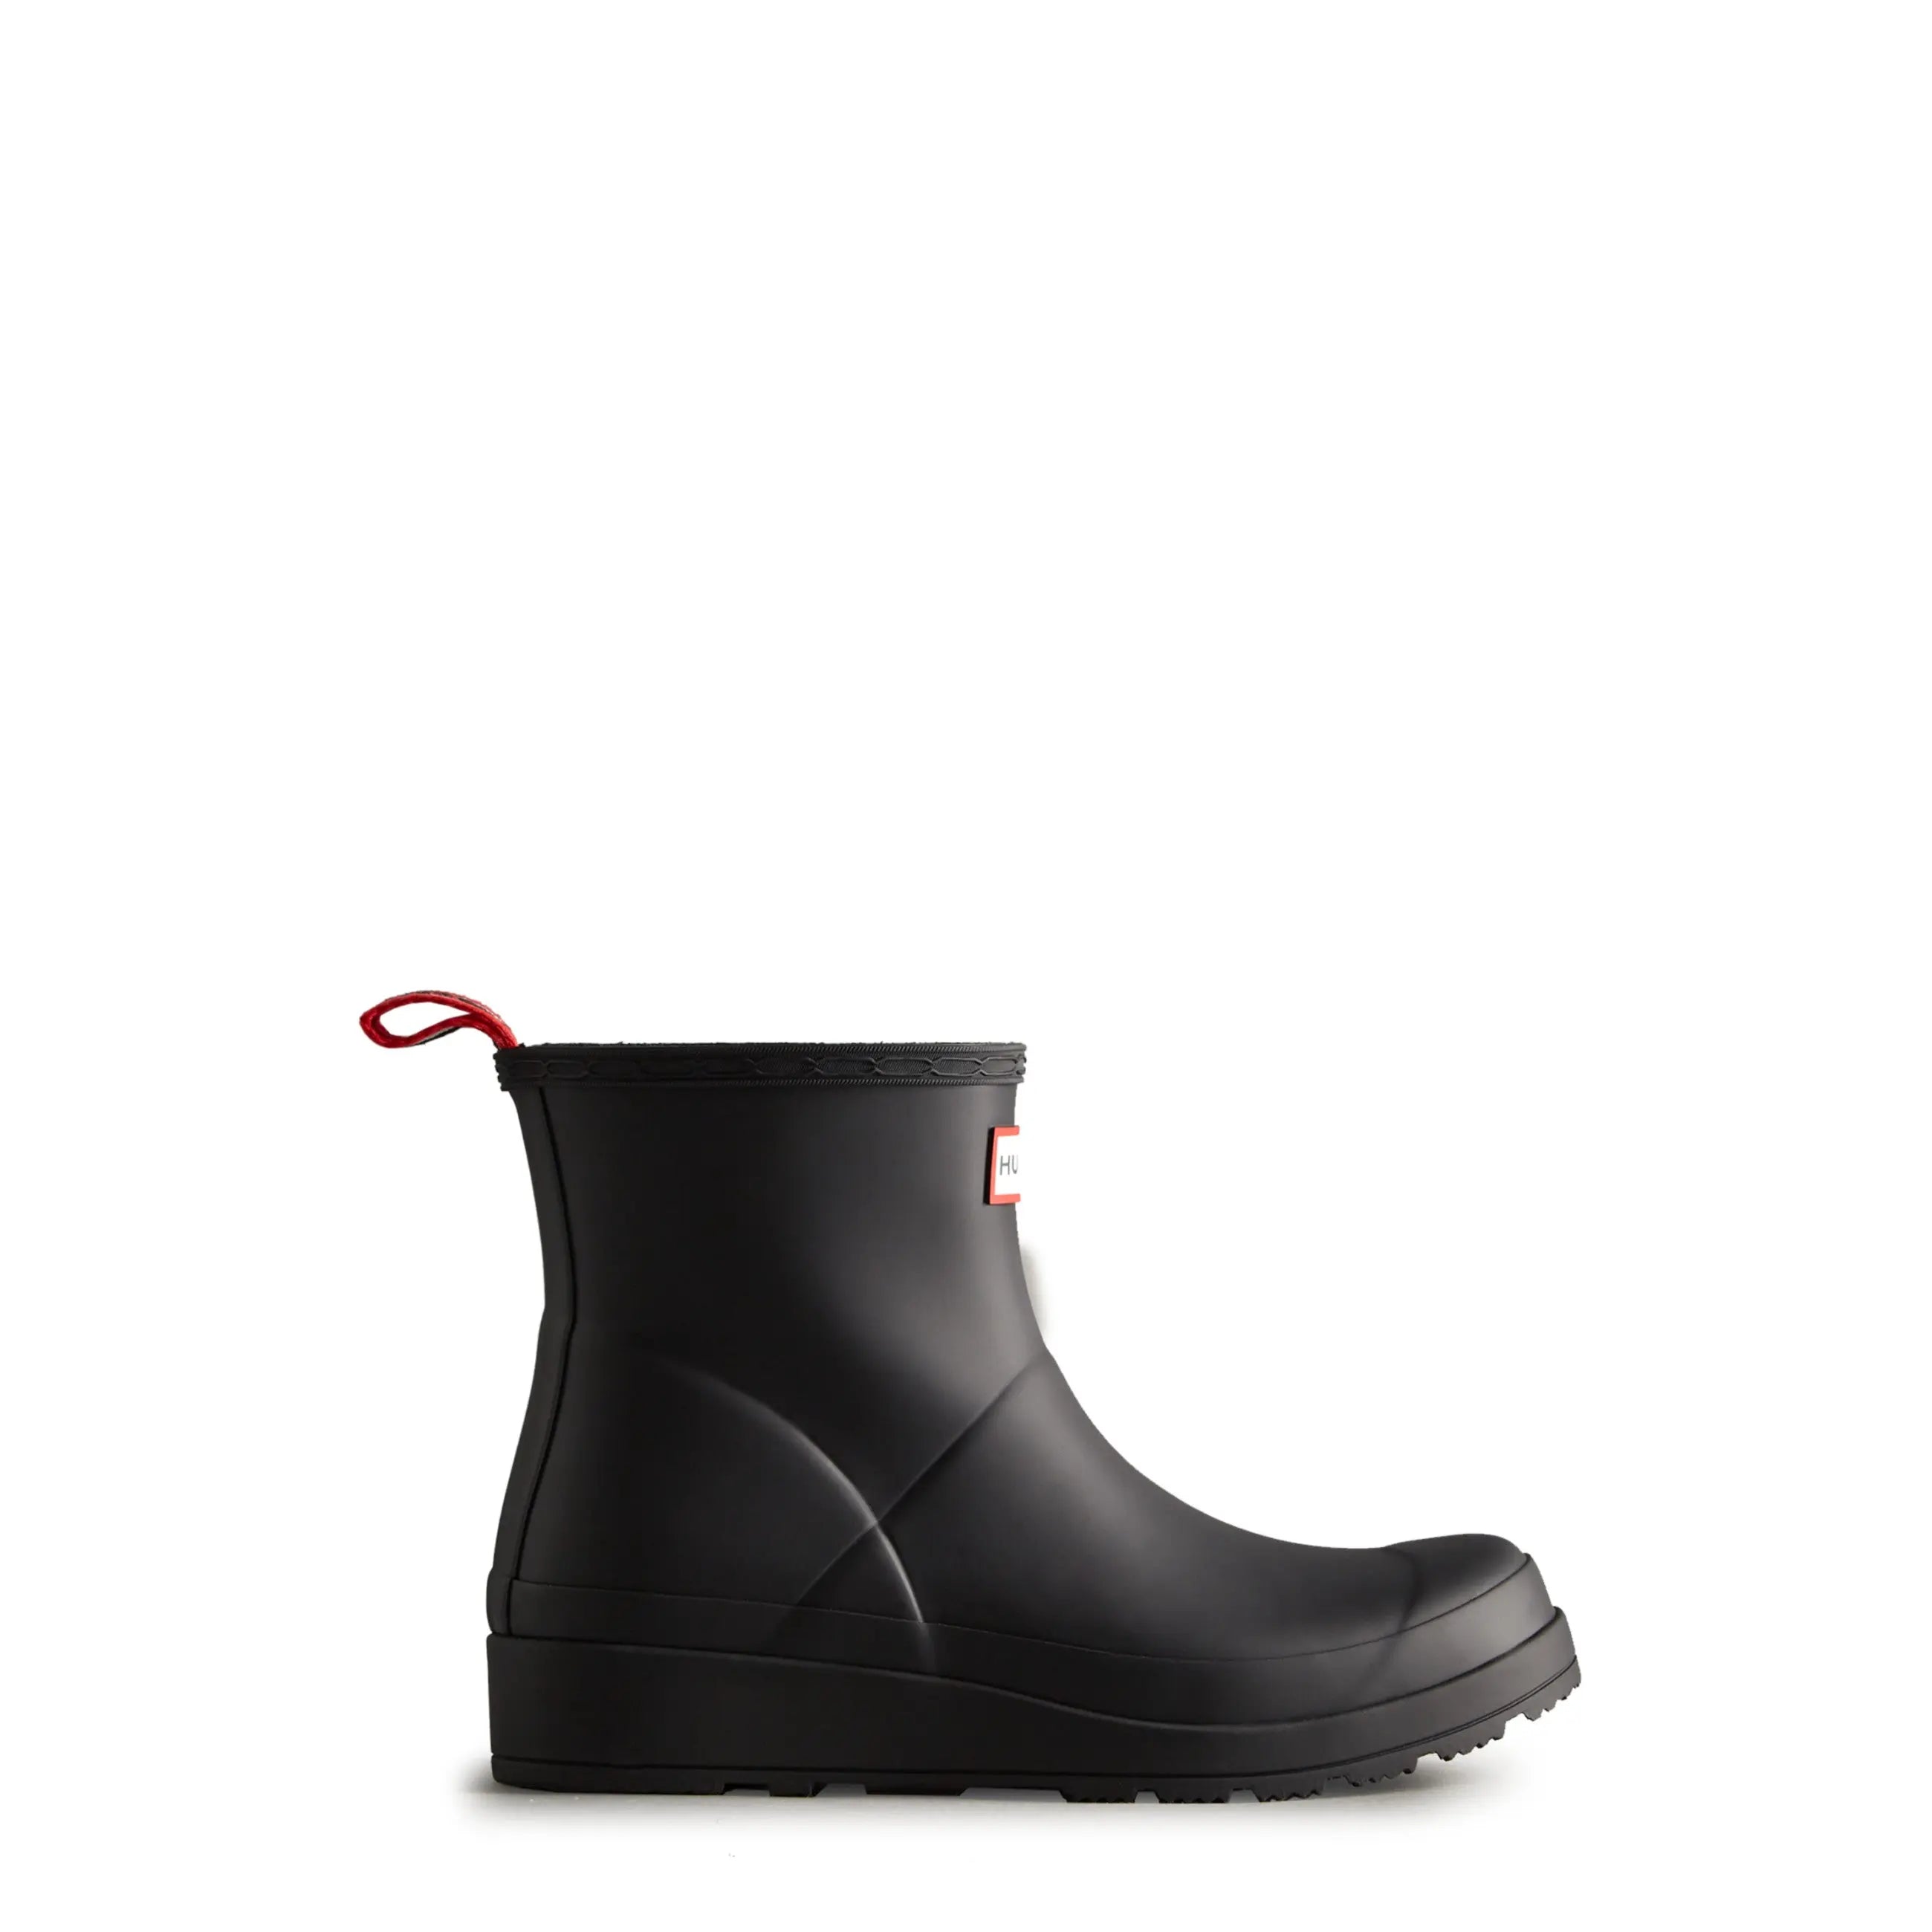 Women's PLAY™ Short Rain Boots - Hunter Boots Women's PLAY™ Short Rain Boots Black Hunter Boots Women's > Rain Boots > Play Boots